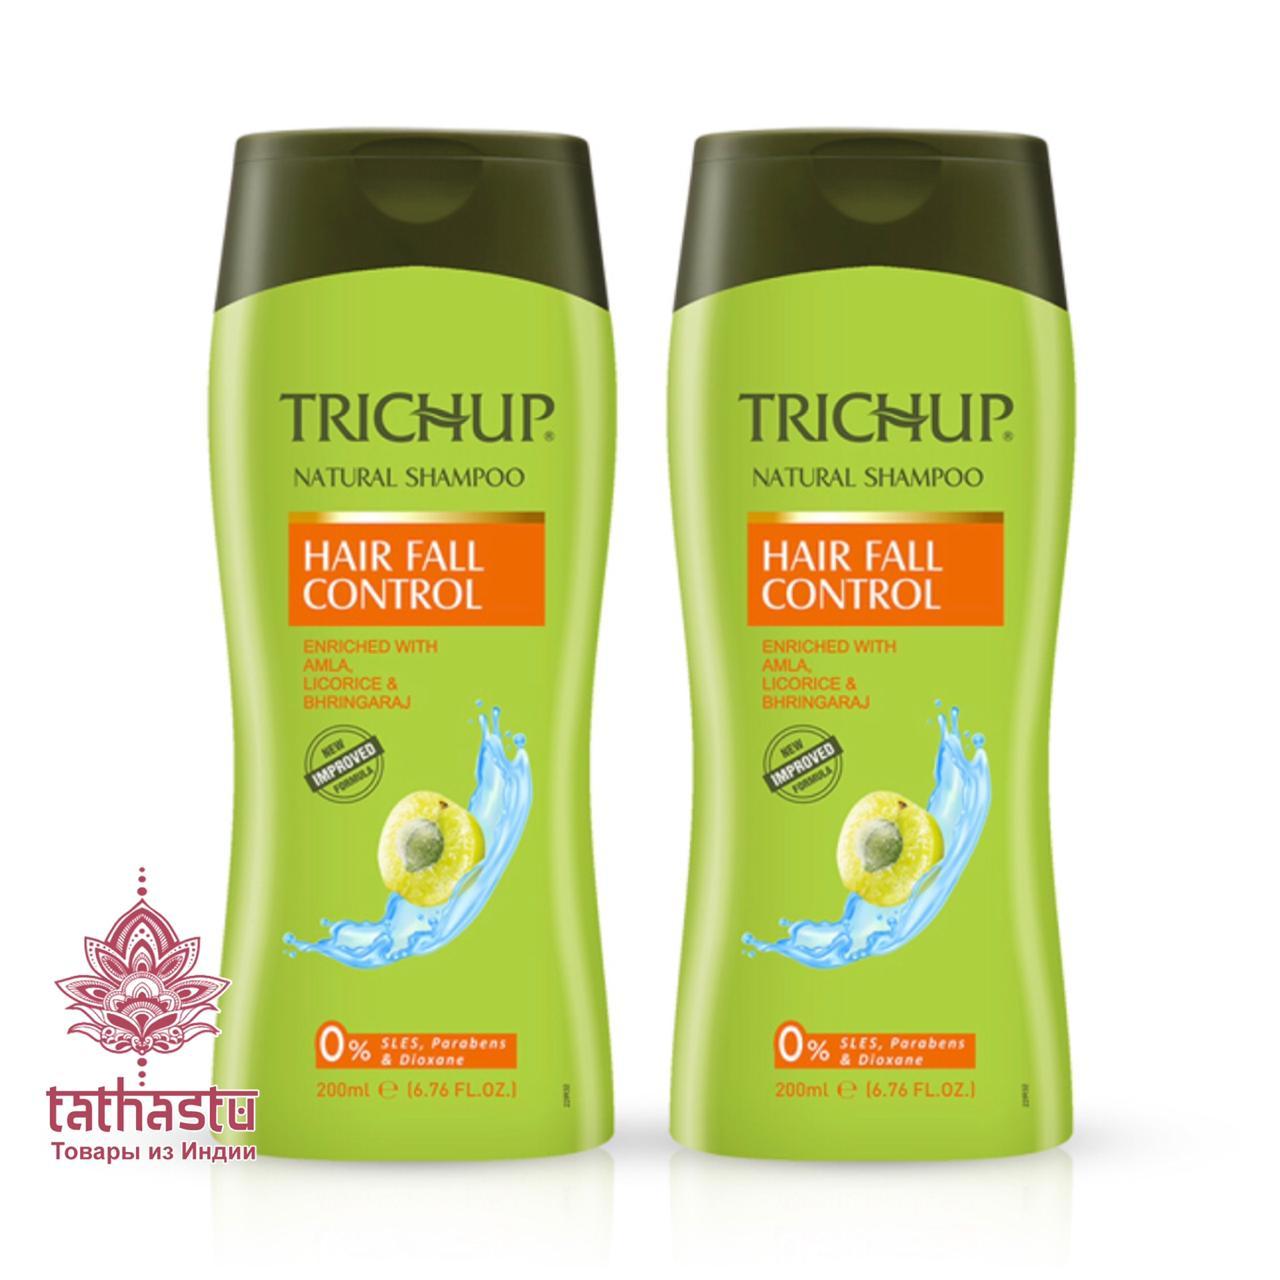 Тричуп - шампунь против выпадения волос. Tathastu товары и индии